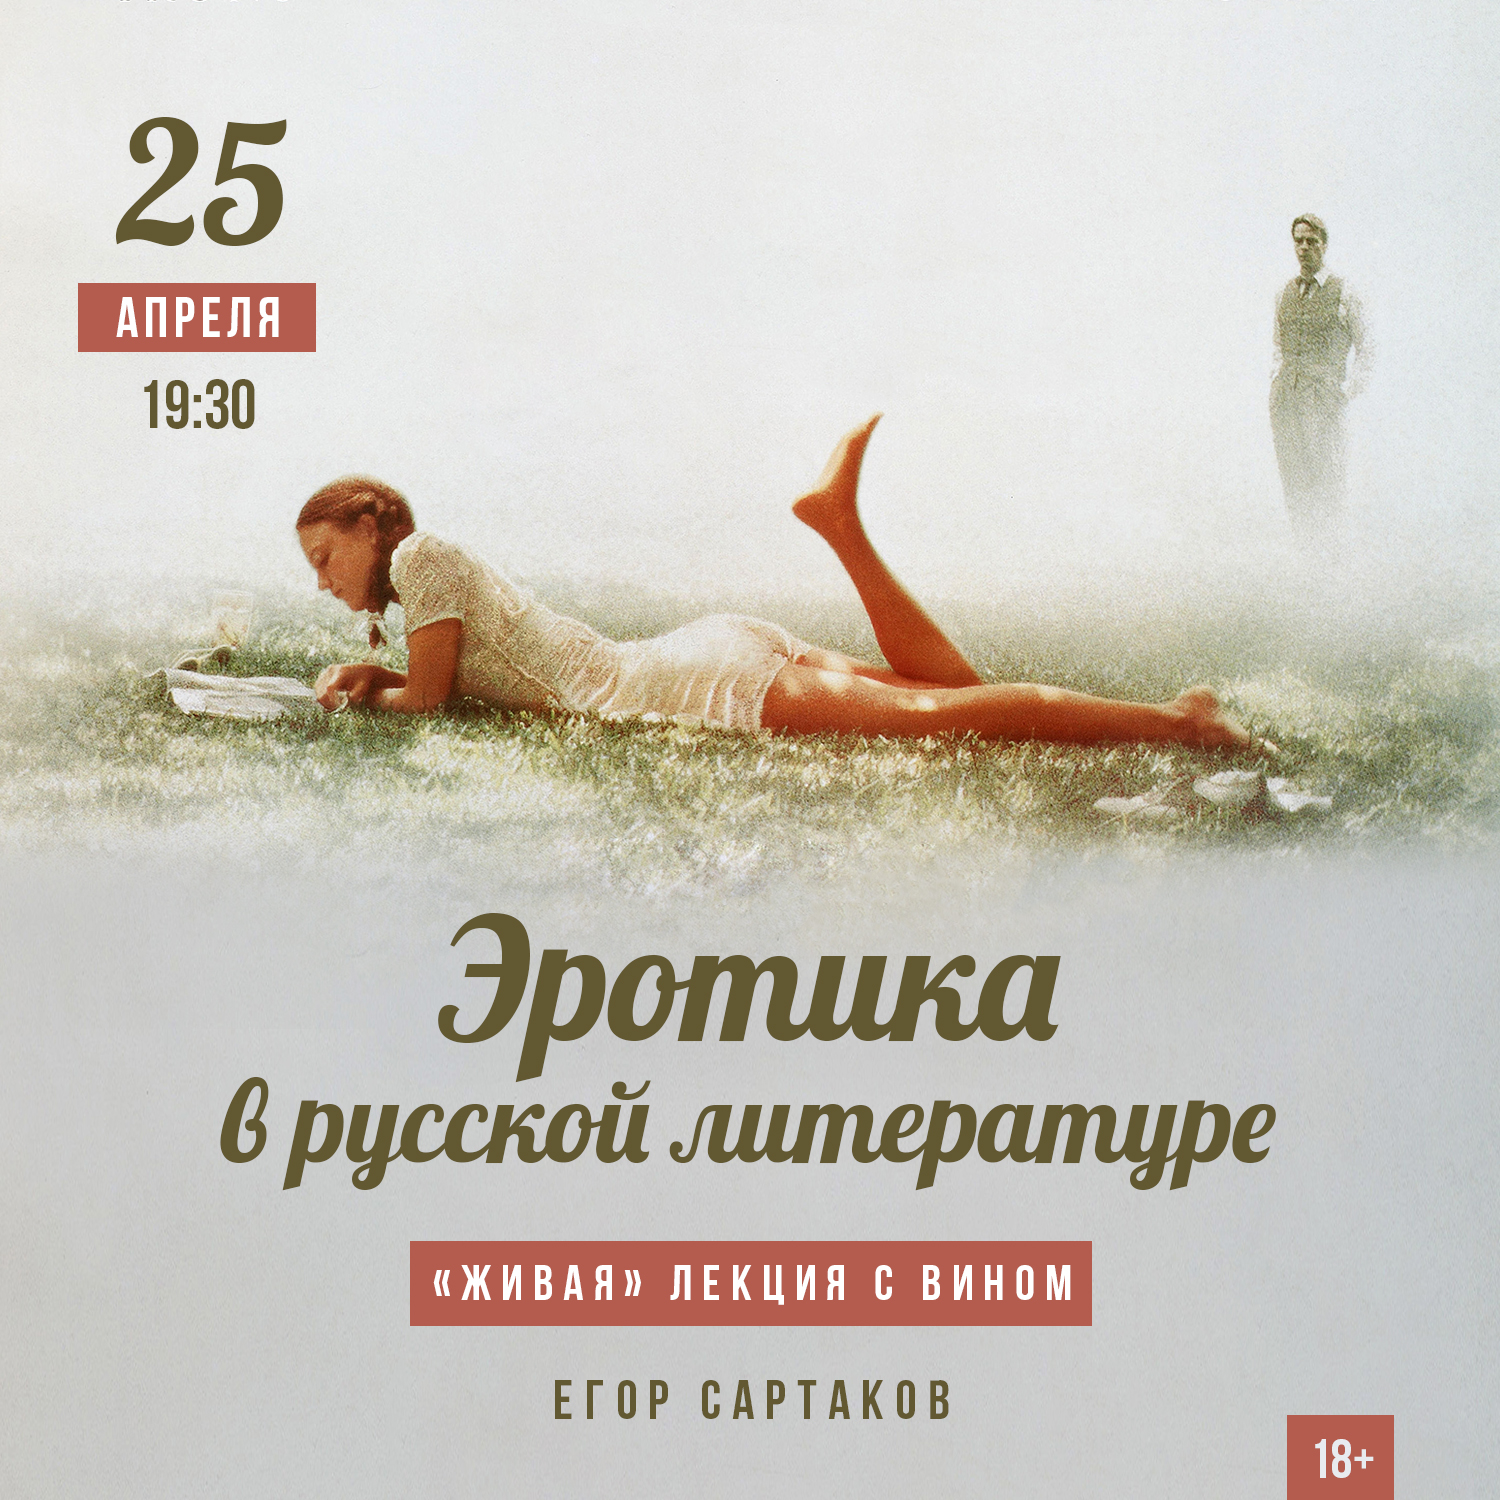 Русские фильмы про отдых на море: 89 видео в HD